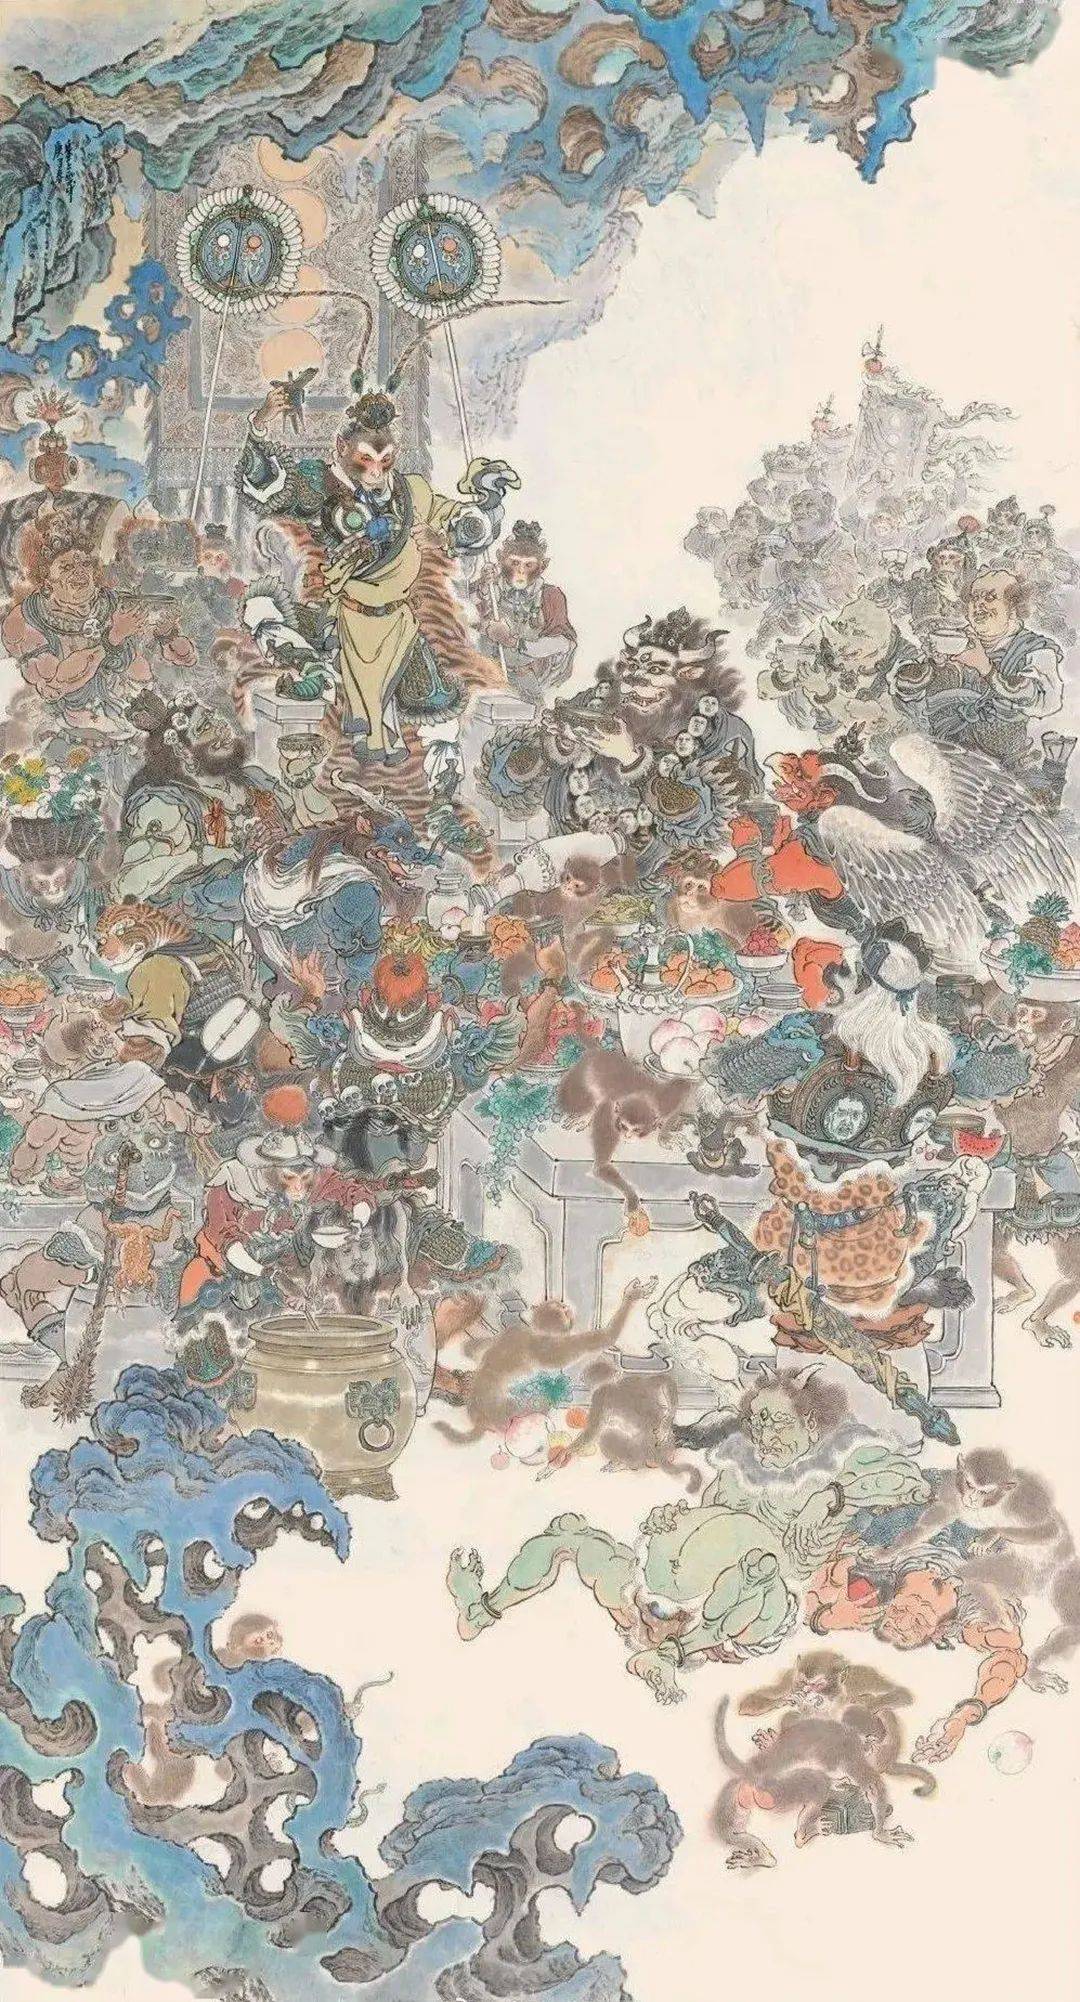 原创绘画西游的李云中,把中国故事搬进邮票,画面美到令人惊叹!